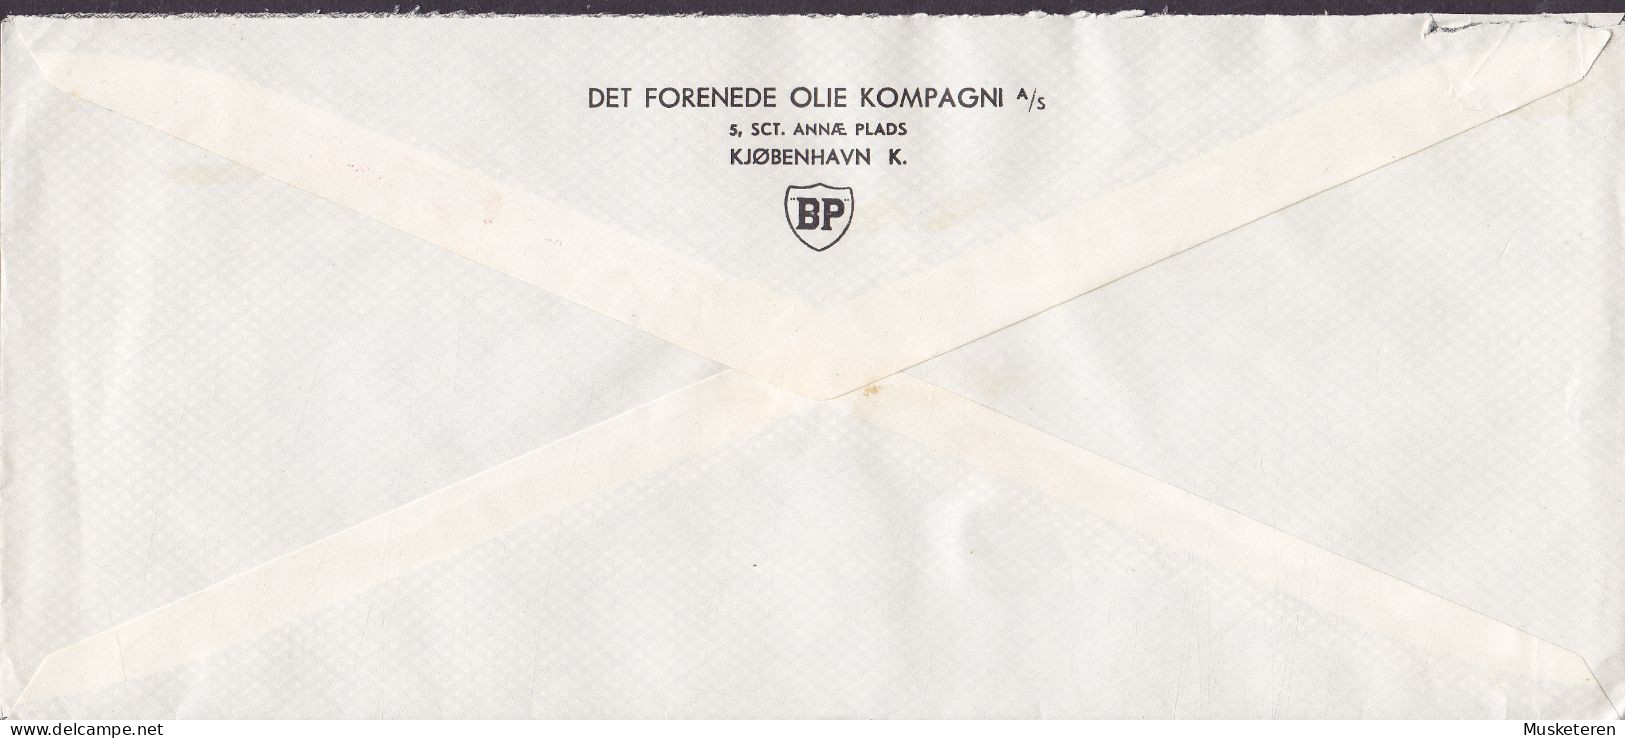 Denmark DET FORENEDE OLIE KOMPAGNI British Petrol Cachet ATM Cancel '399', KØBENHAVN 1948 Meter Cancel Cover (2 Scans) - Maschinenstempel (EMA)